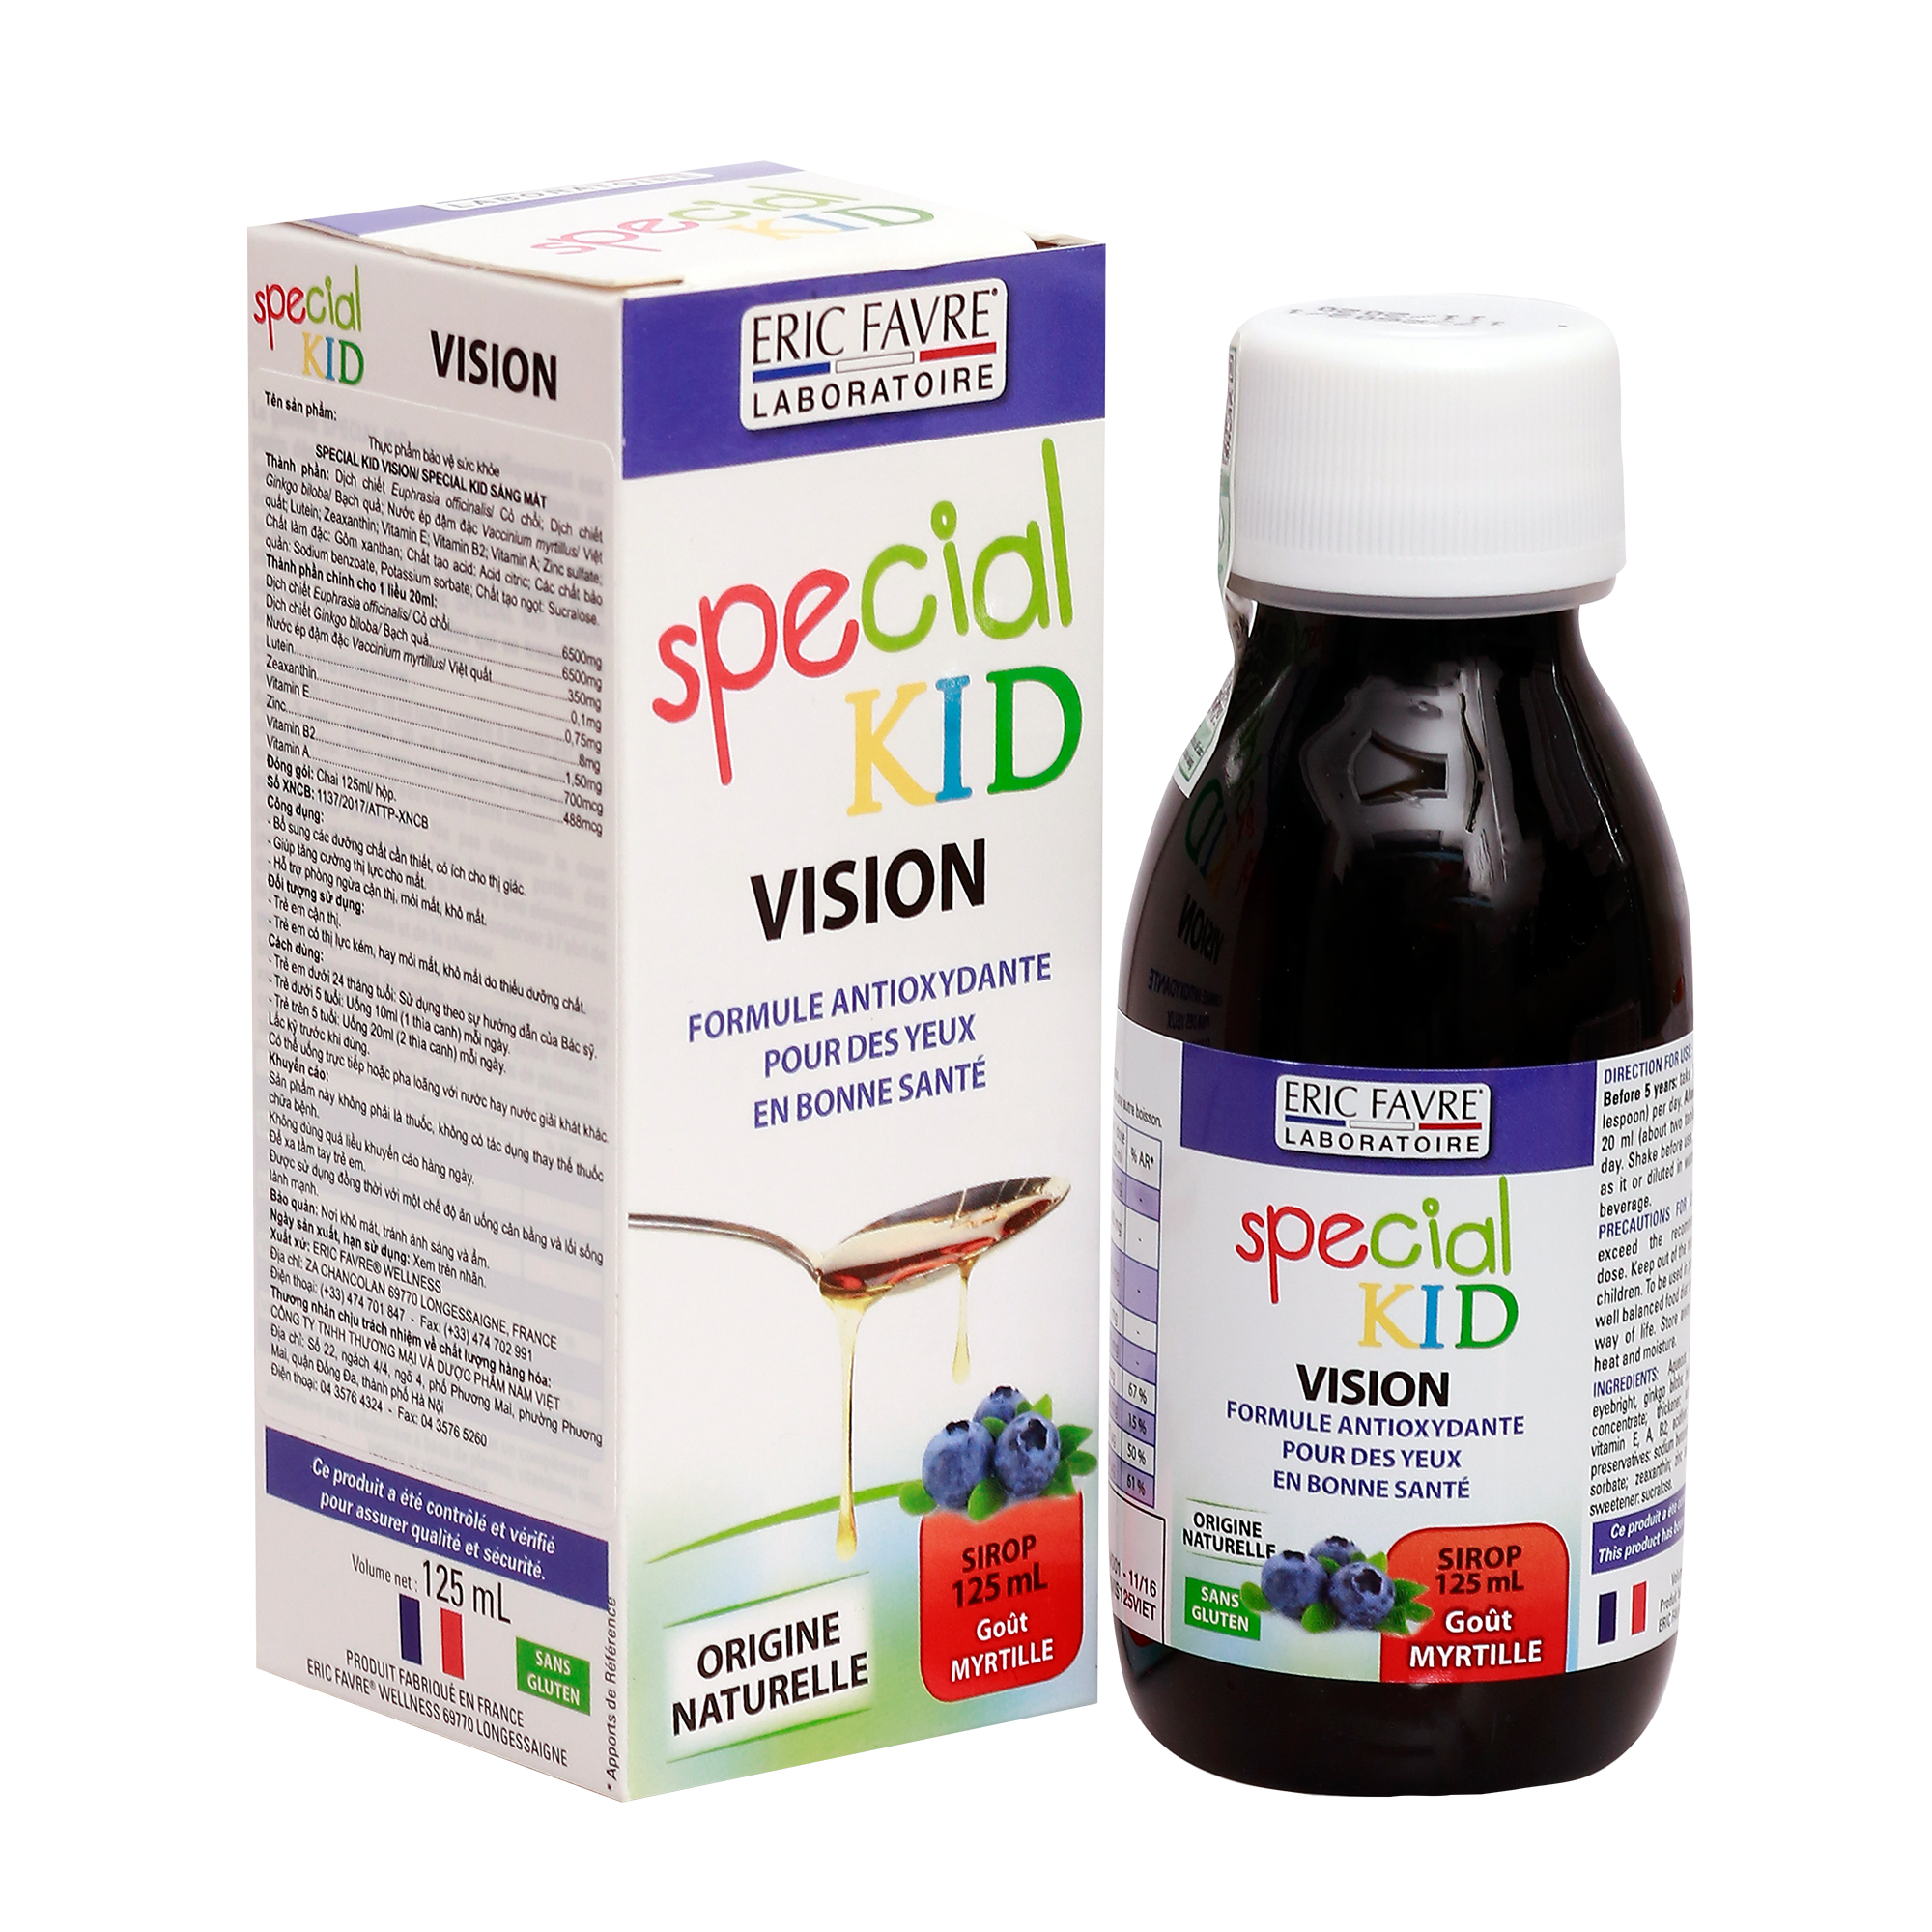 TPBVSK Special Kid Vision - Siro tăng cường thị lực, cơ chế bảo vệ mắt 3 lớp, hỗ trợ ngăn ngừa ánh sáng xanh (125ml) [Nhập khẩu Pháp]